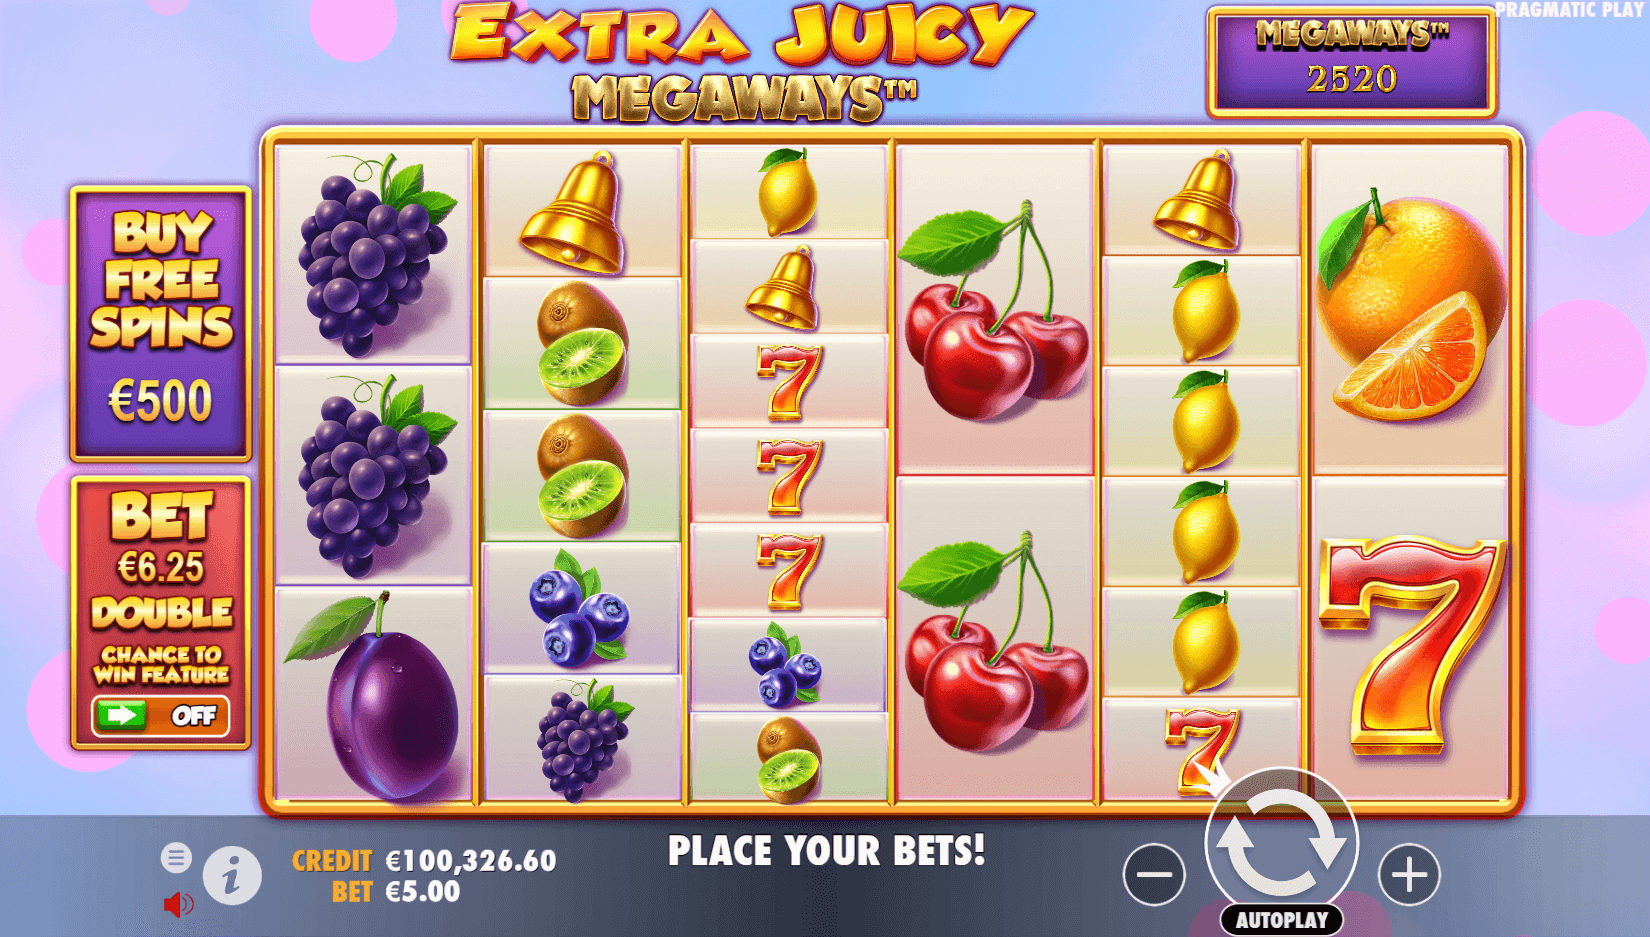 Extra Juicy Megaways slot